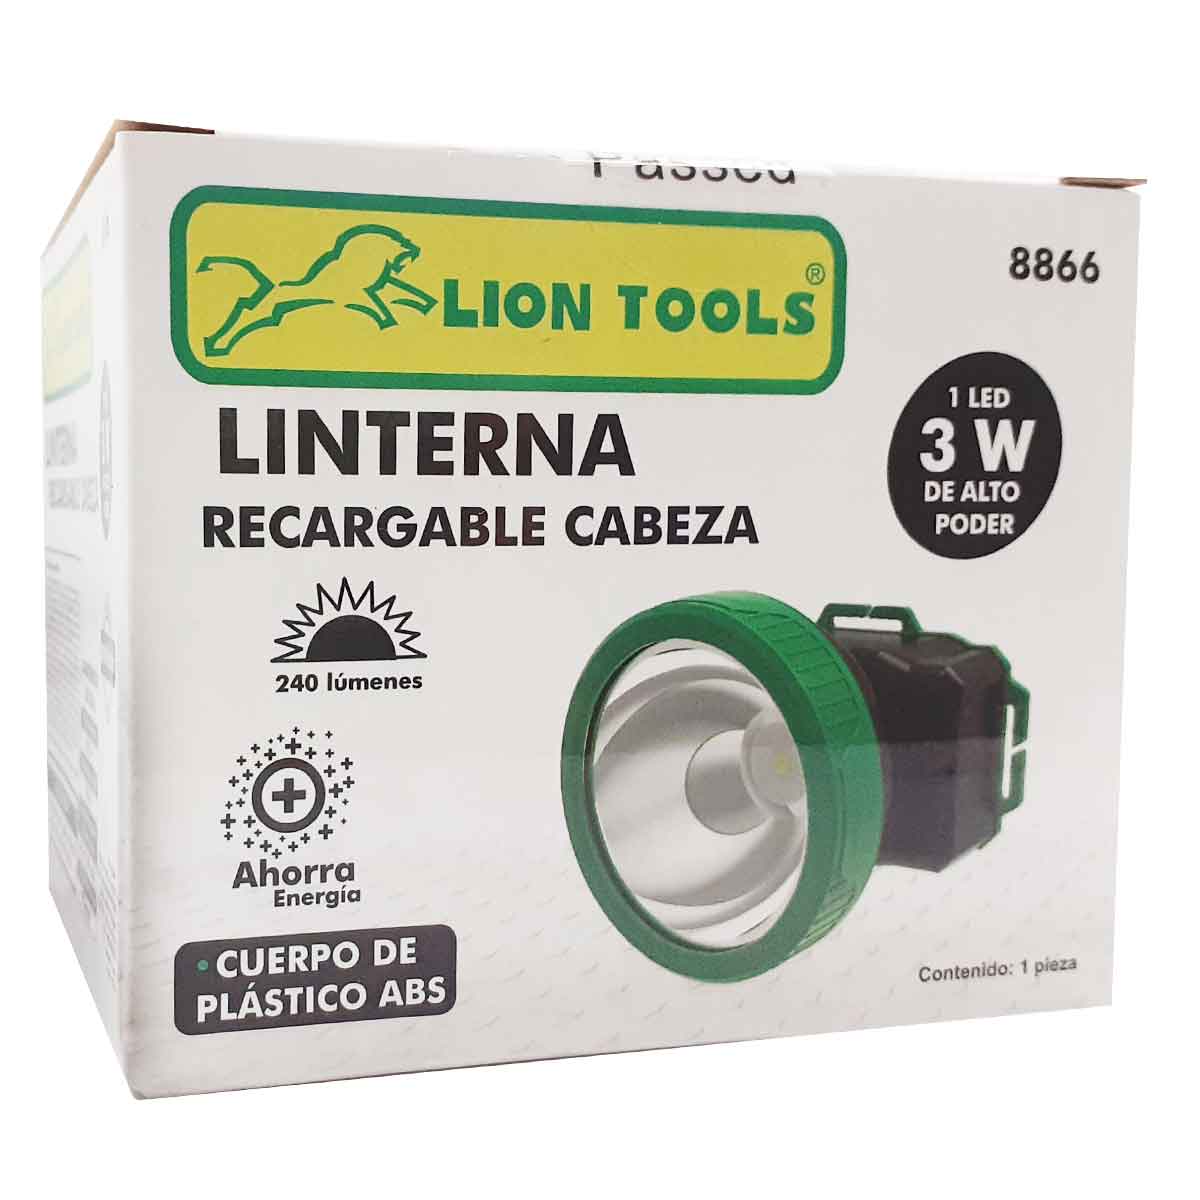 Linterna Led Recargable De Cabeza Minero 3w 240lm 8866 Lion Tools